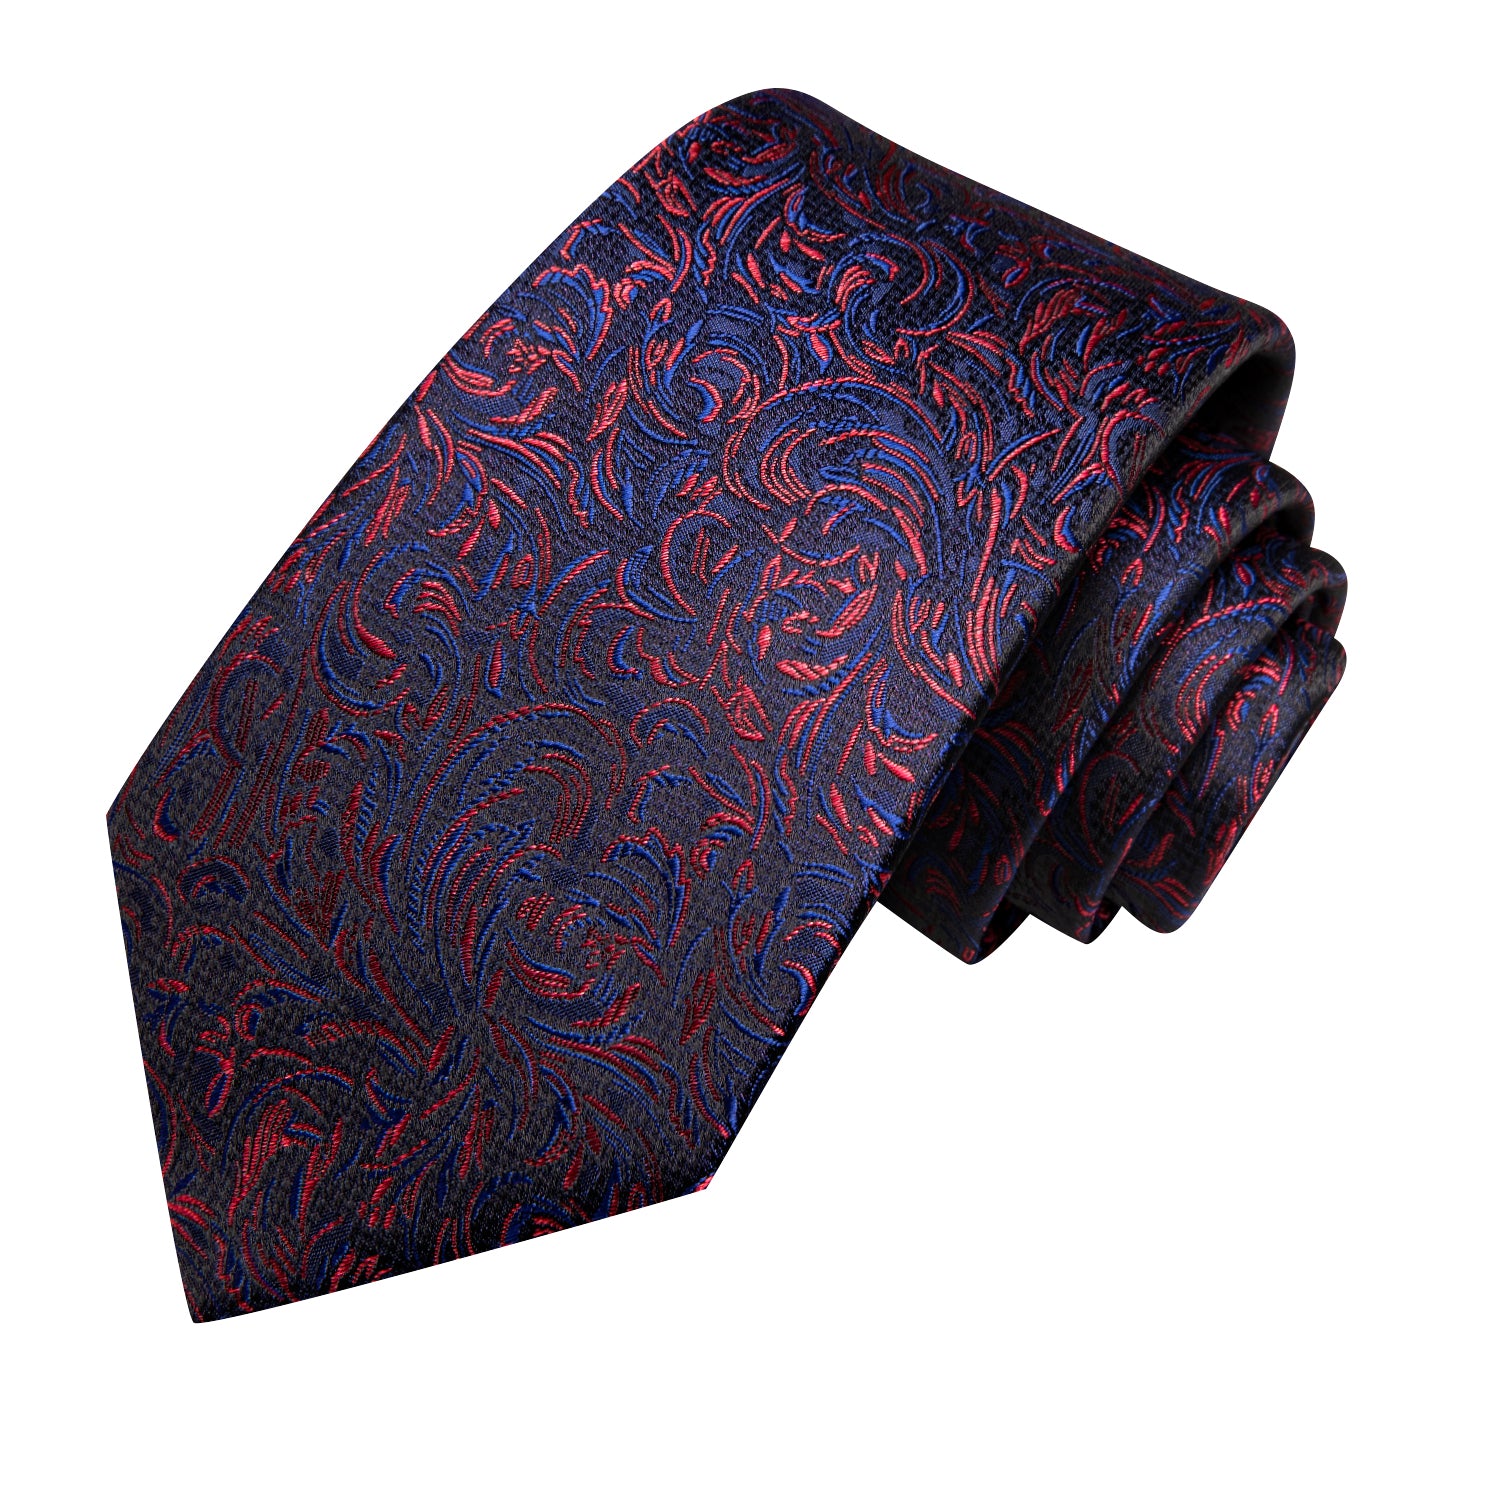 Hi-Tie Blue Red Floral Novelty Men's Tie Pocket Square Cufflinks Set